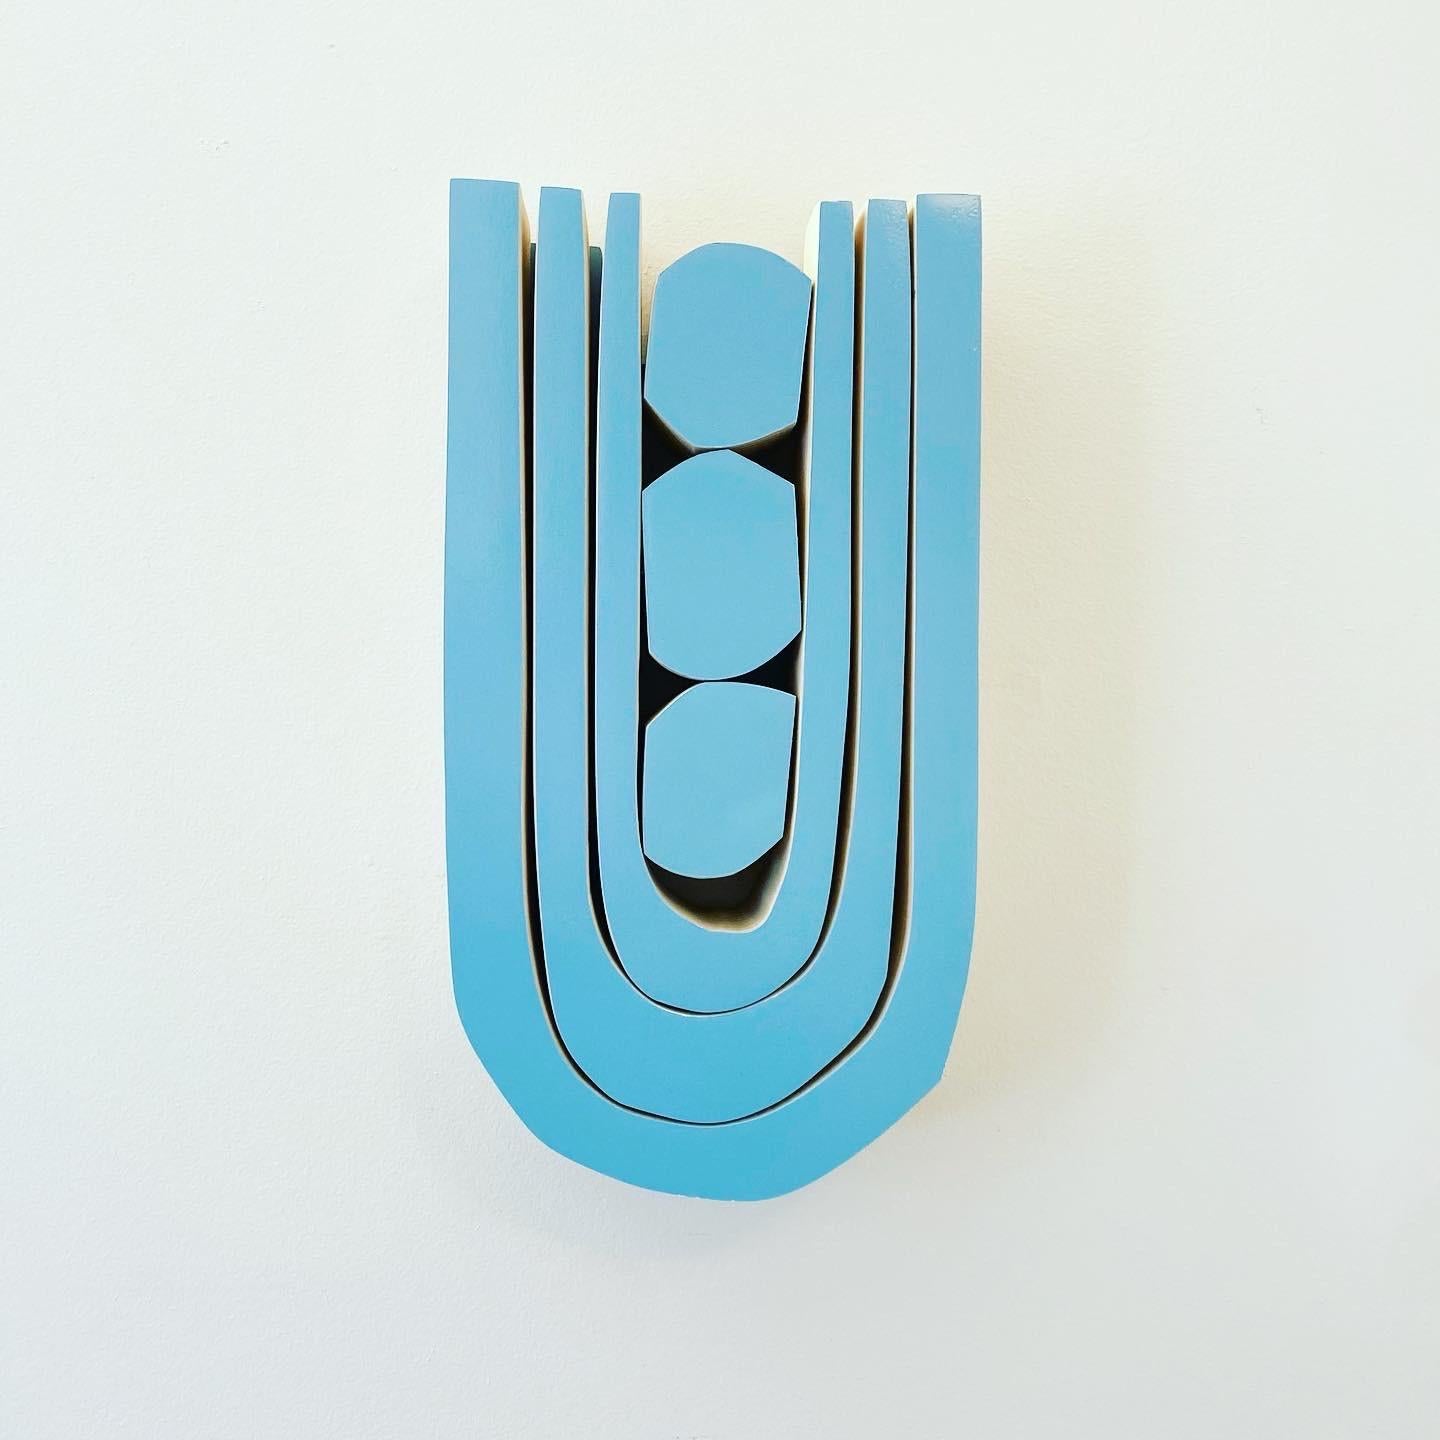 Kunstwerk mit Sprüh-Acryl auf Pappelholz mit glänzendem Klarlack hergestellt

Die Serie Small Pop besteht aus minimalistischen Wandskulpturen aus Holz, die klein und blockig sind und leuchtende, gesättigte Farben aufweisen. Die Stücke wurden von